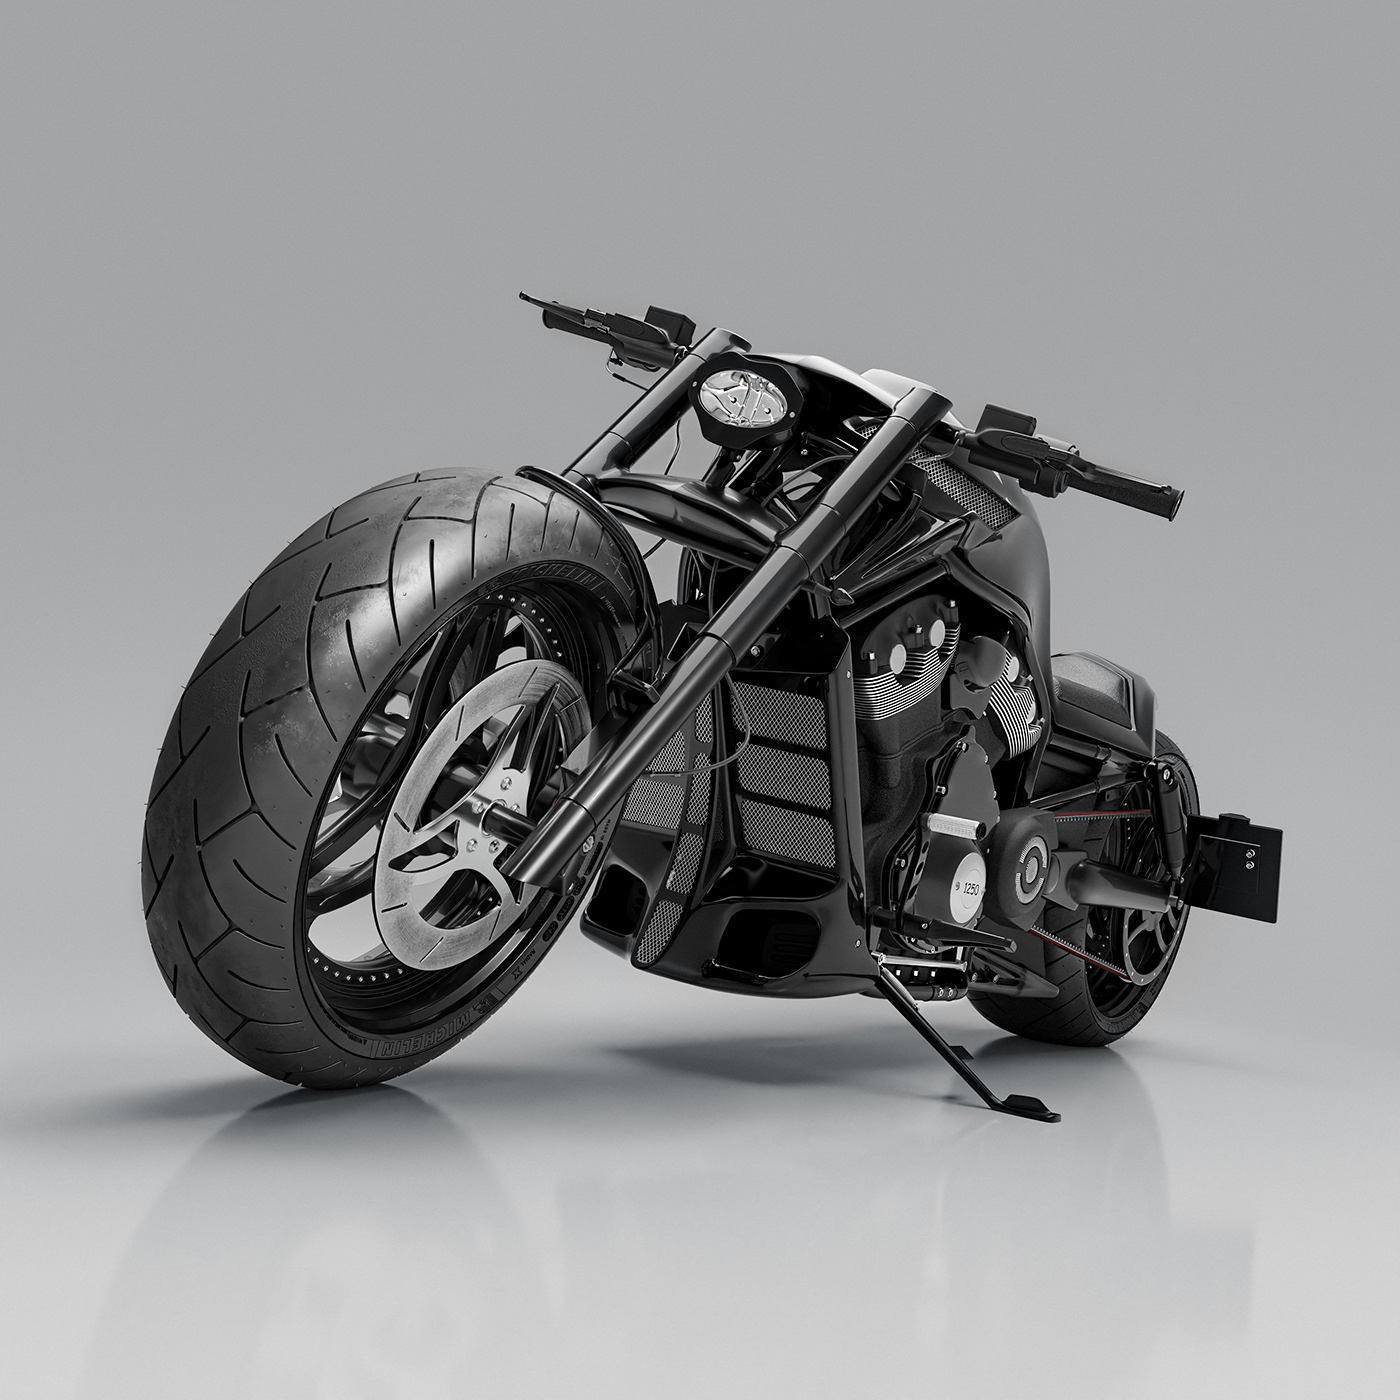 Harley Davidson CGI 3D automotive   Vehicle motorcycle blender model Render visualization